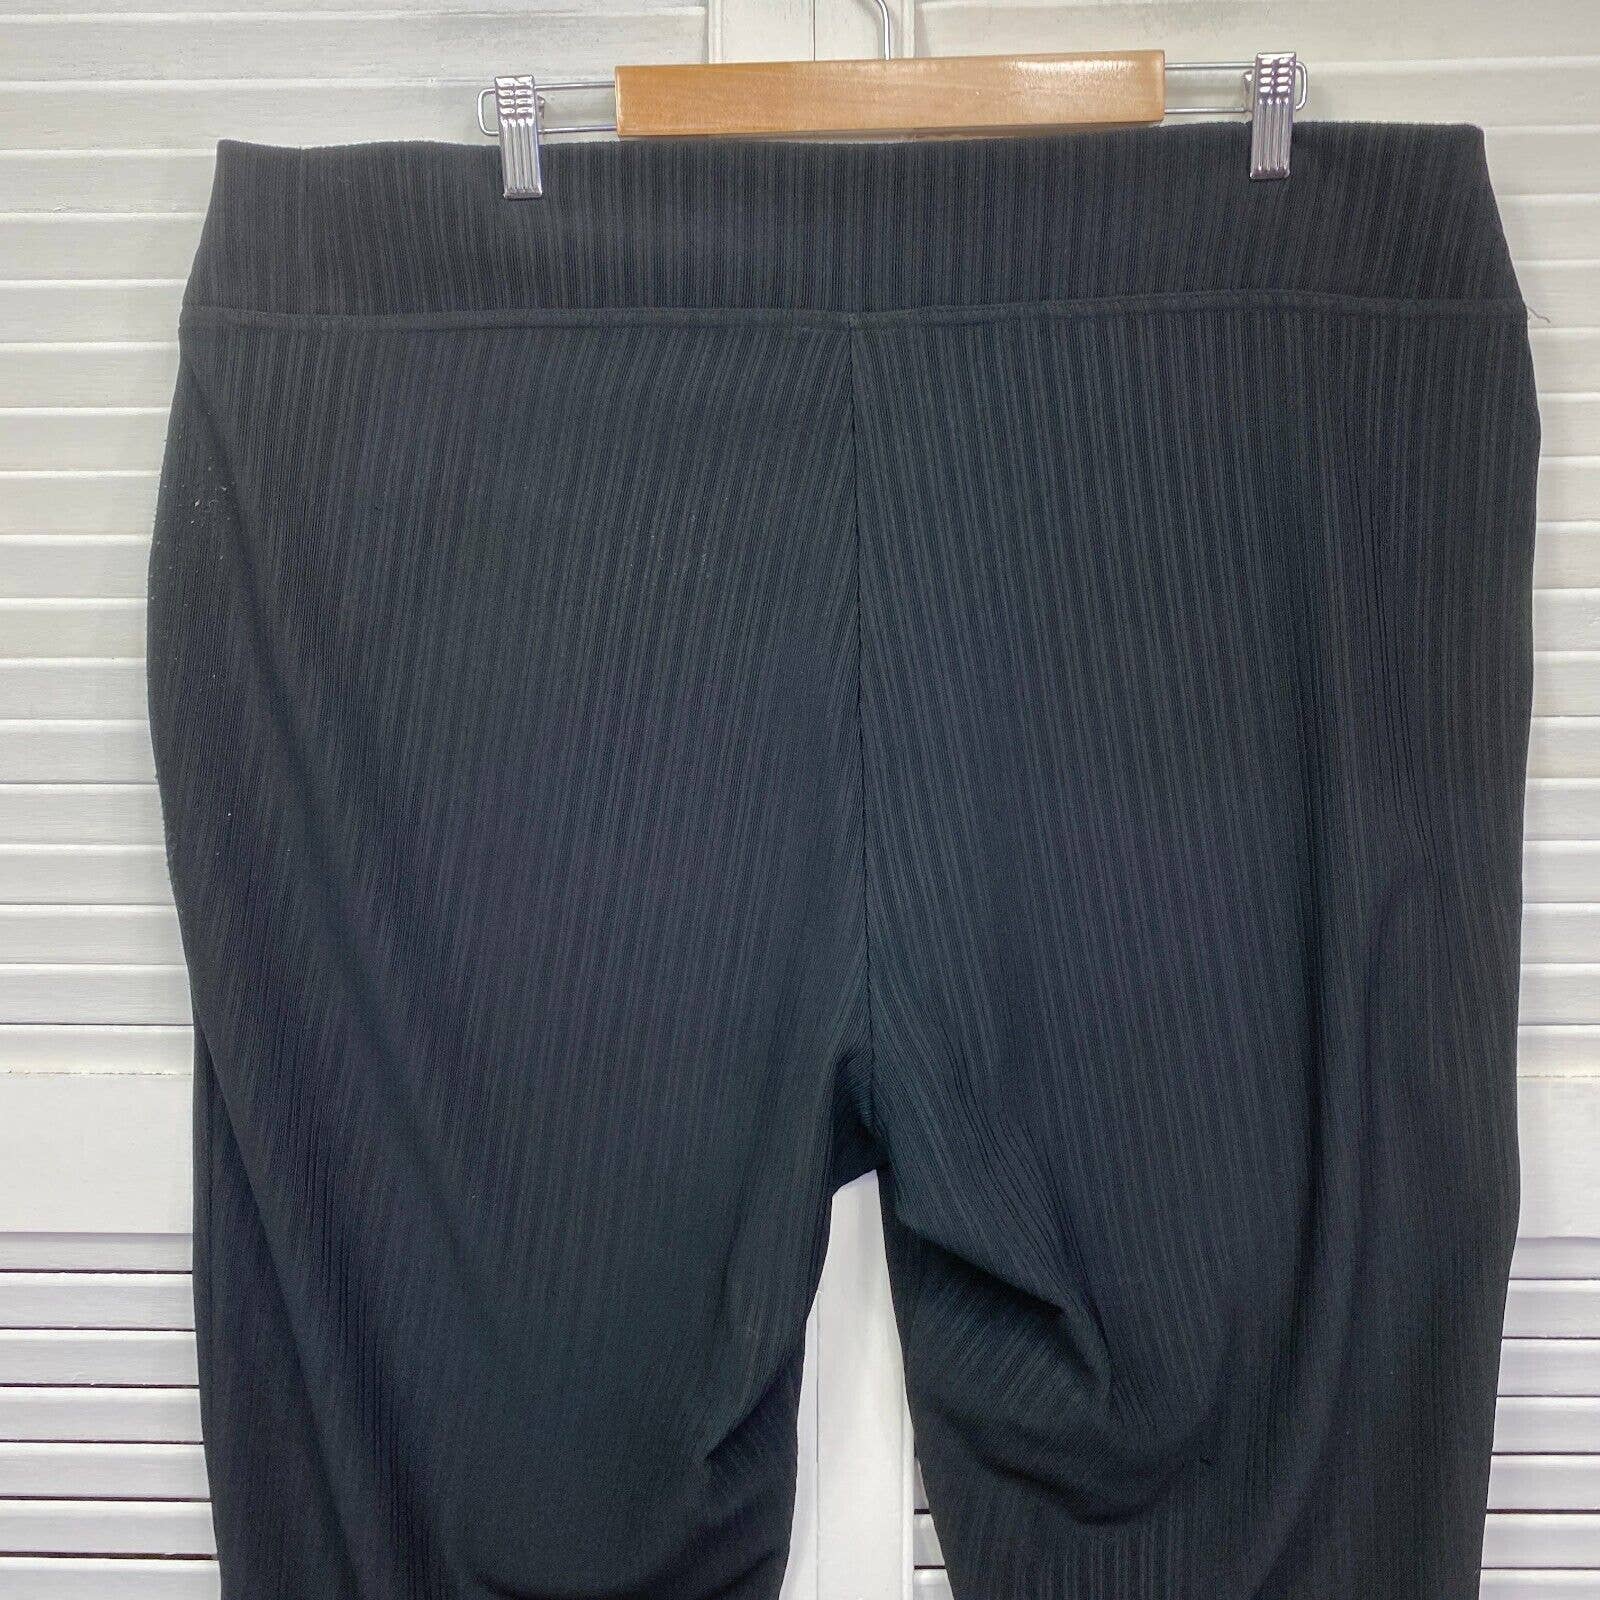 Beme womens dress pants size 16 black cropped stretch polka dot 065404